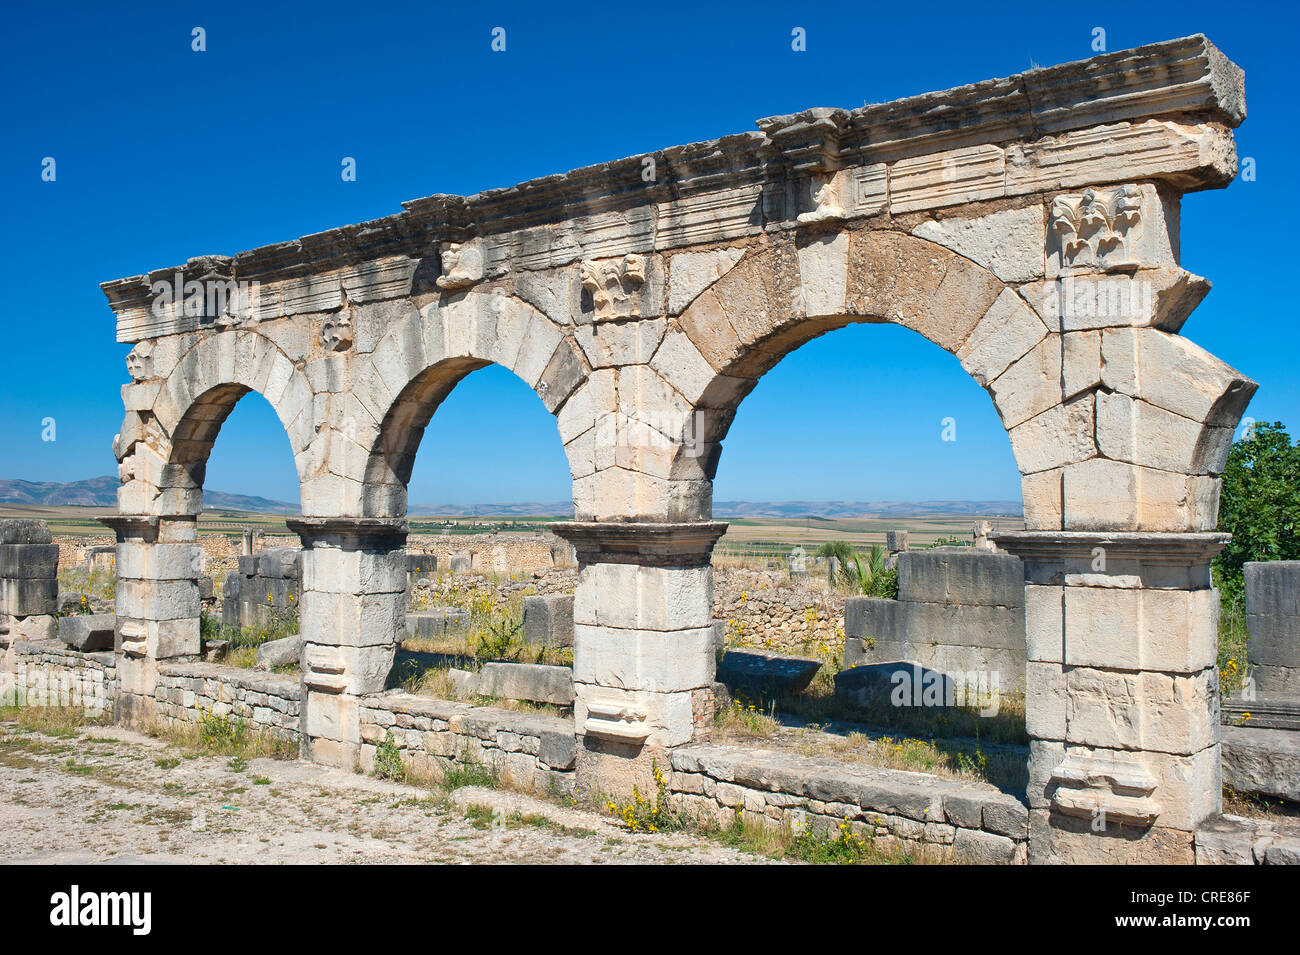 Ruines romaines de Volubilis, ancienne ville, site du patrimoine mondial de l'UNESCO, le Maroc, l'Afrique du Nord, Afrique Banque D'Images